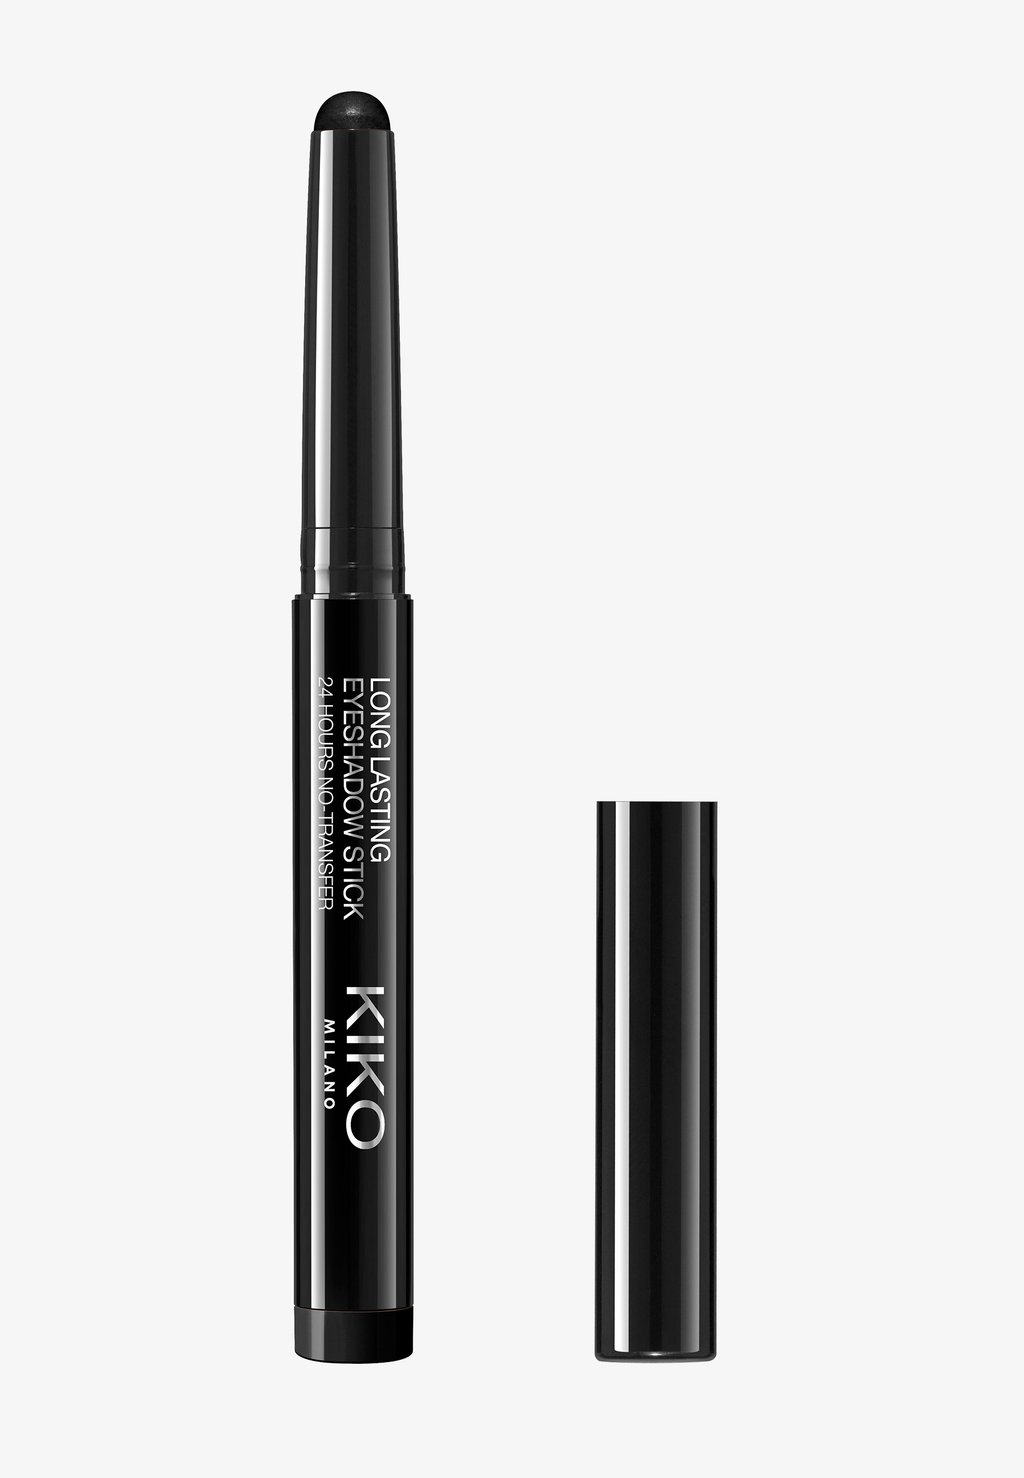 Тени для век Long Lasting Eyeshadow Stick KIKO Milano, цвет 20 black kiko milano суперстойкие тени карандаш для век long lasting stick eyeshadow 20 black